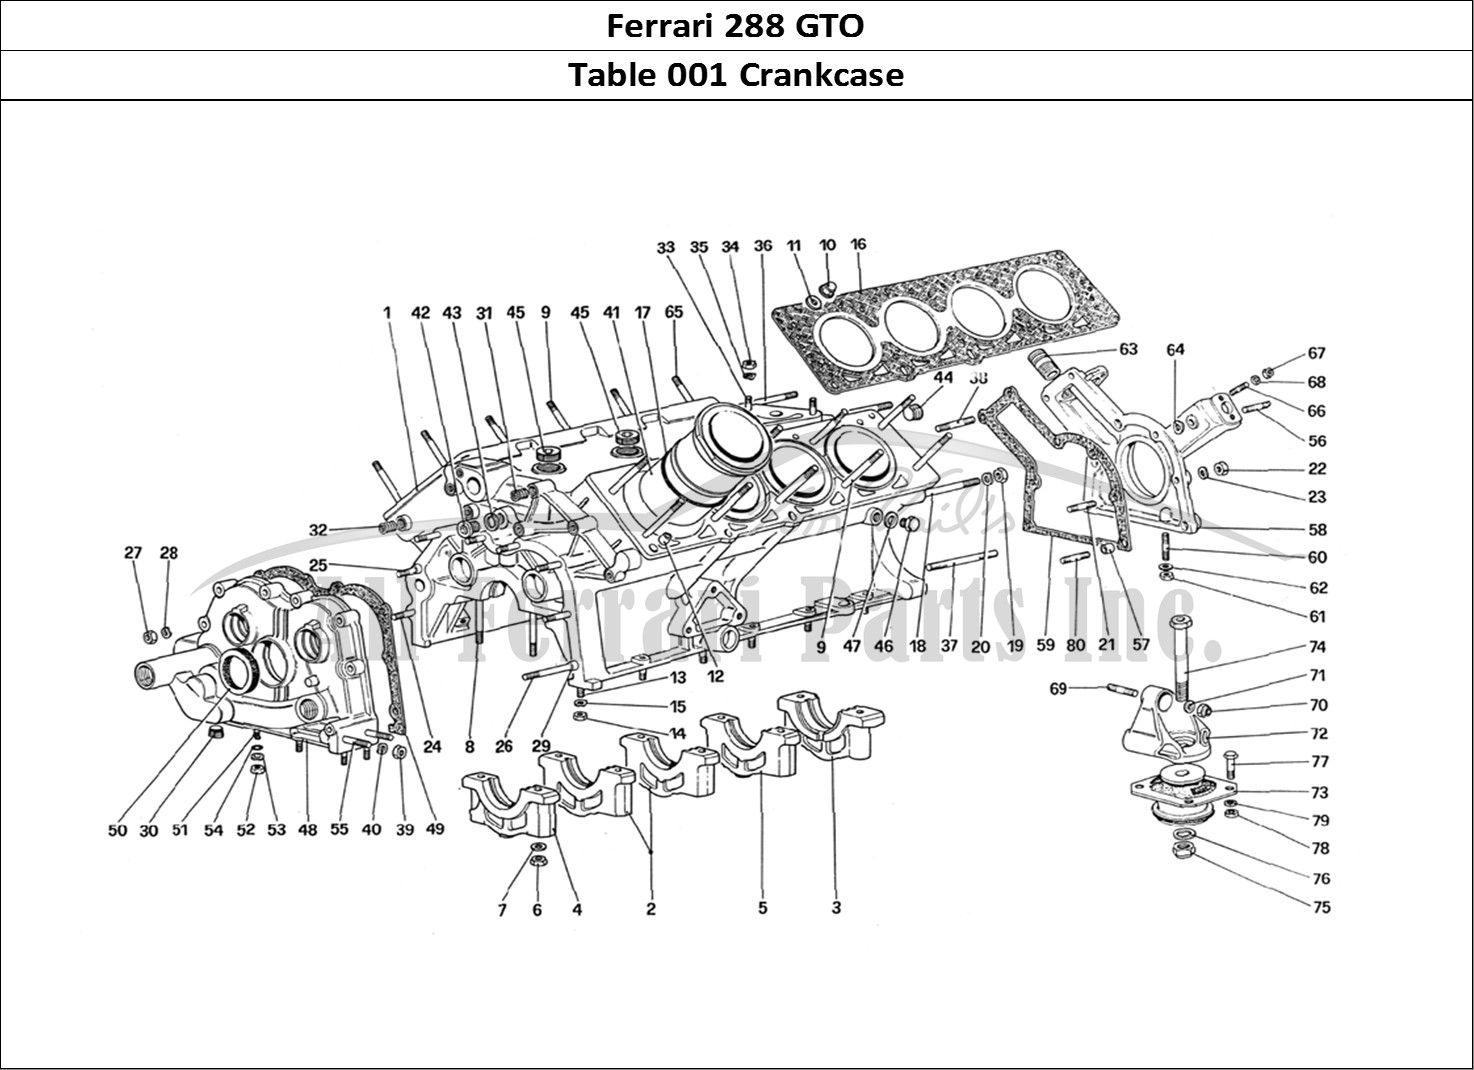 Ferrari Parts Ferrari 288 GTO Page 001 Crankcase